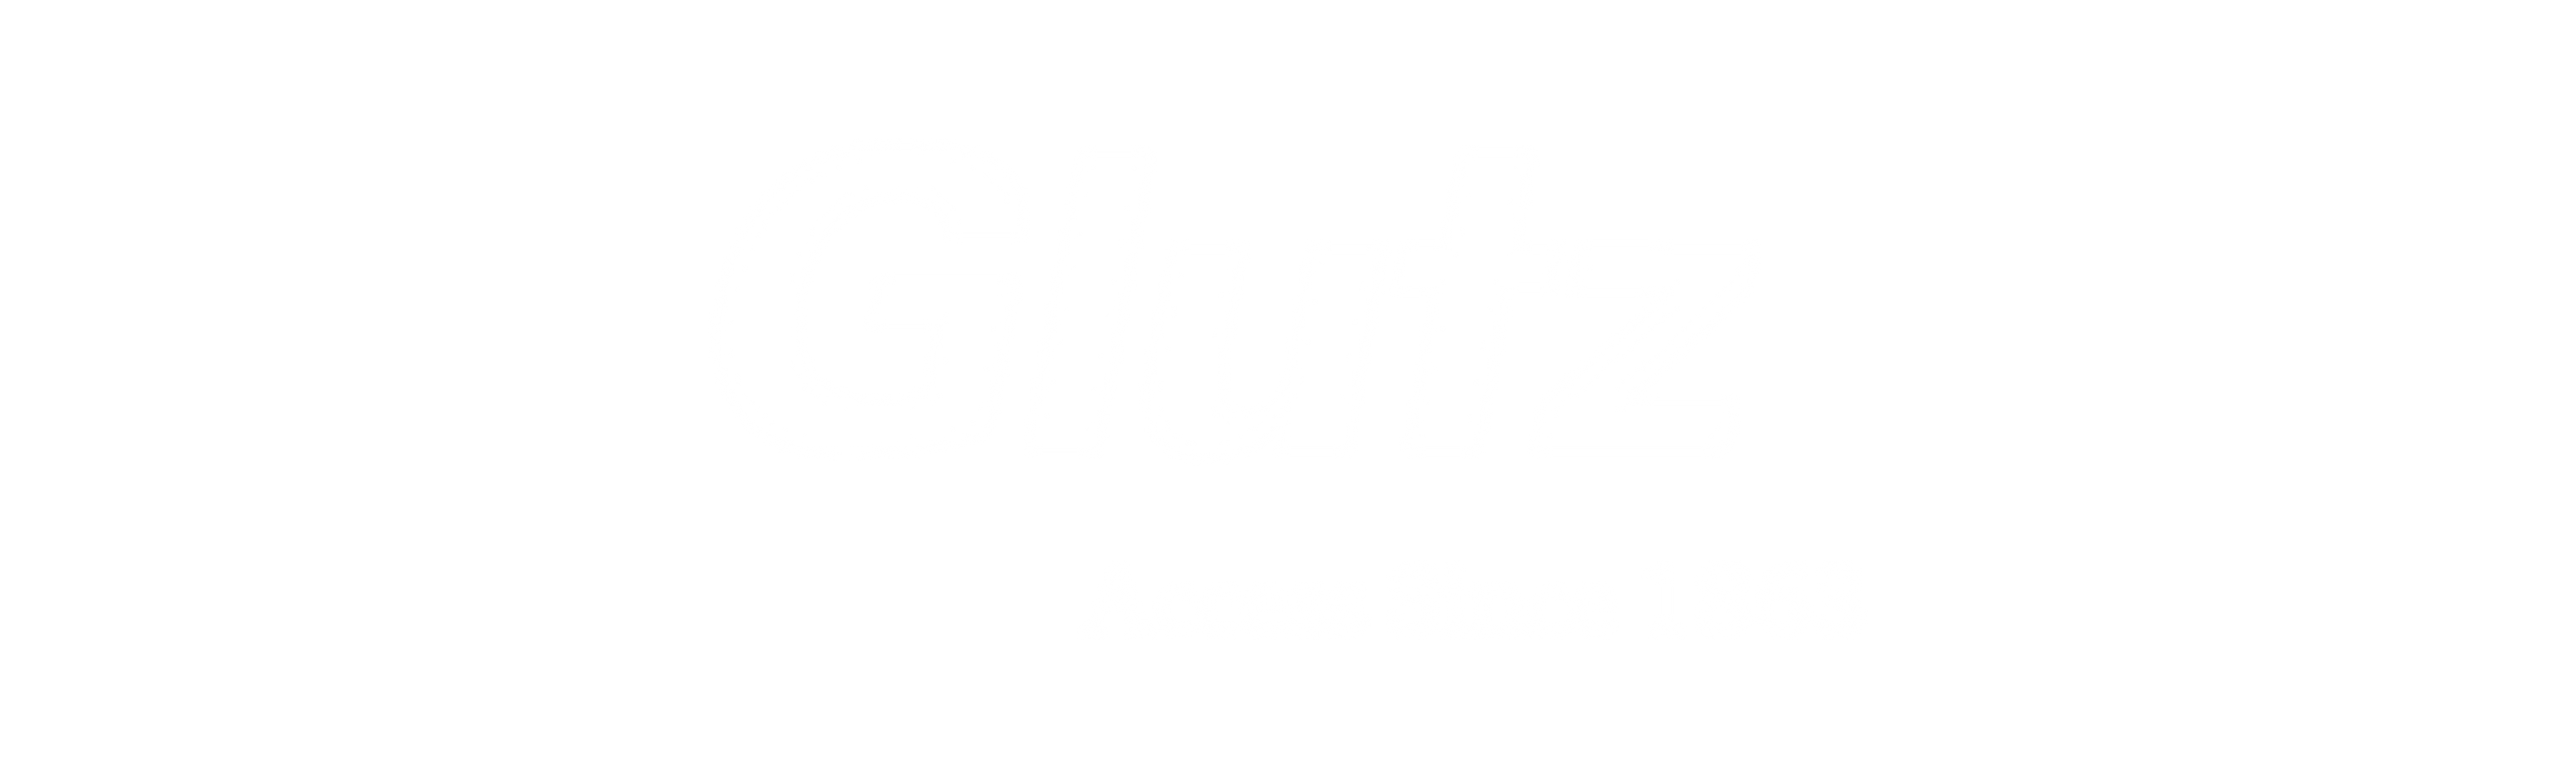 glutz